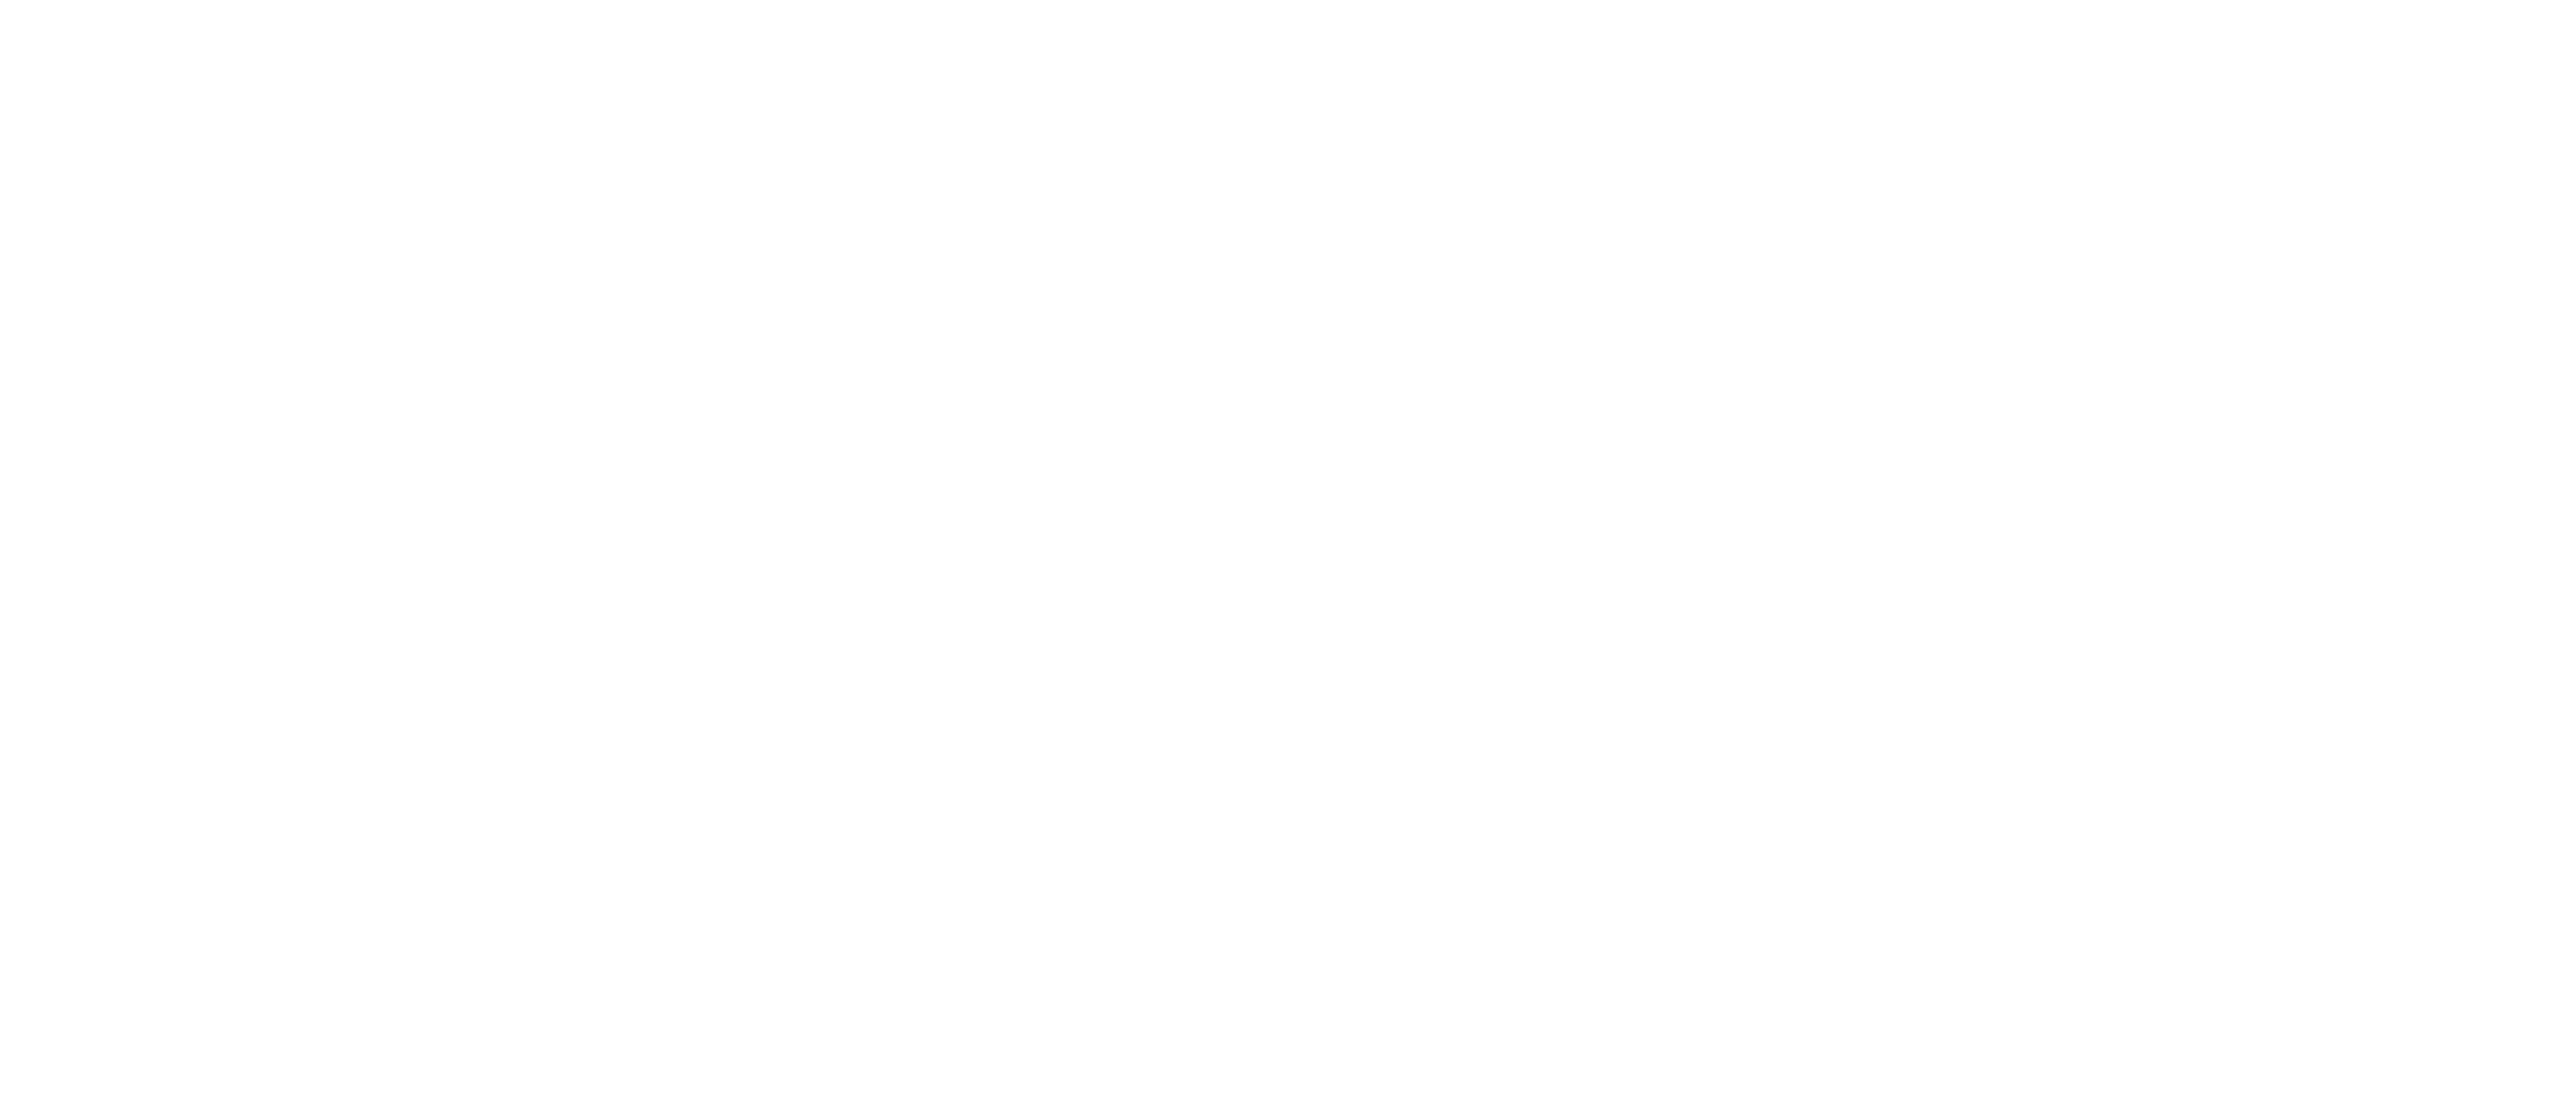 NISHINASUNO BALLET SCHOOL